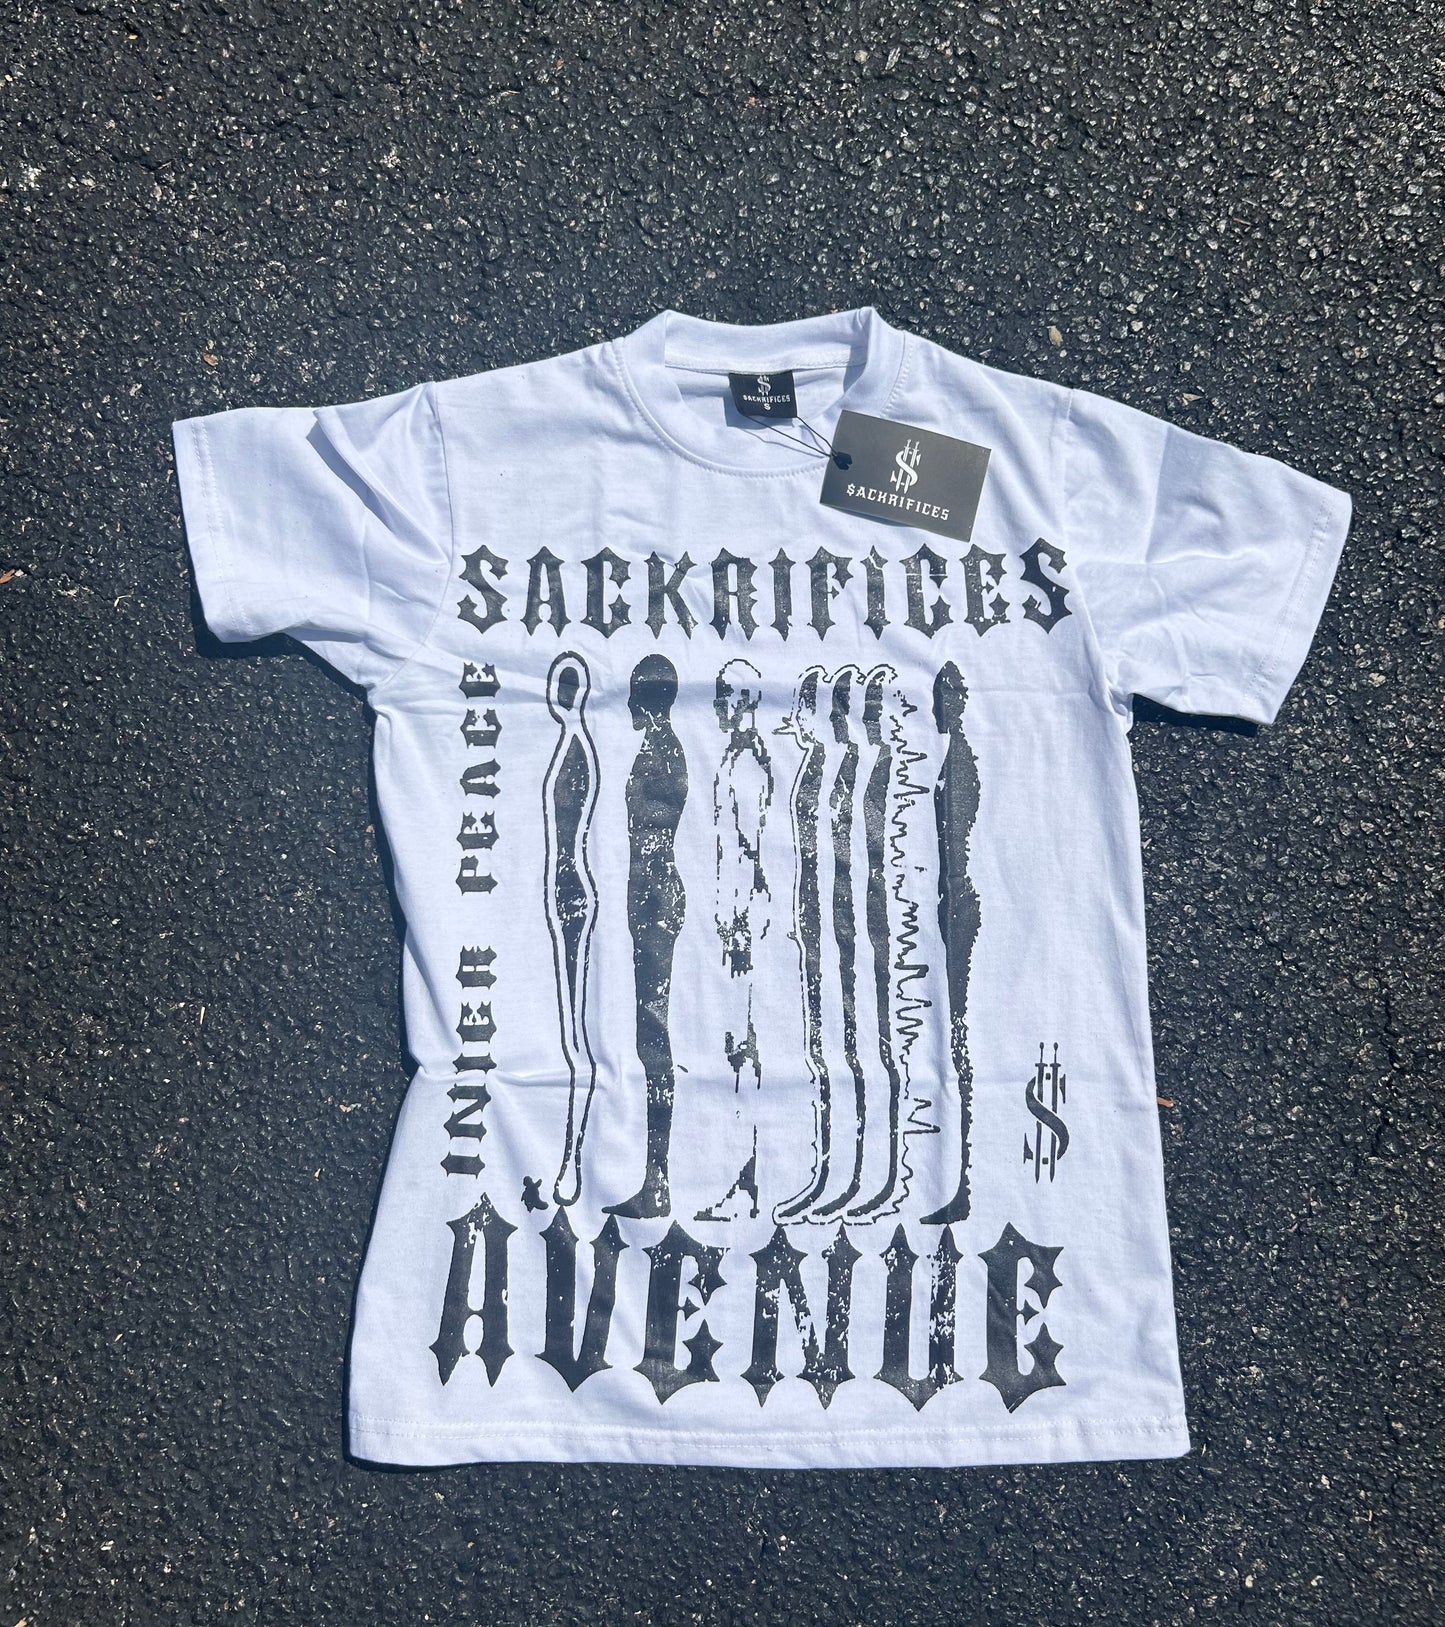 Sack Dollar V2 - T-shirt